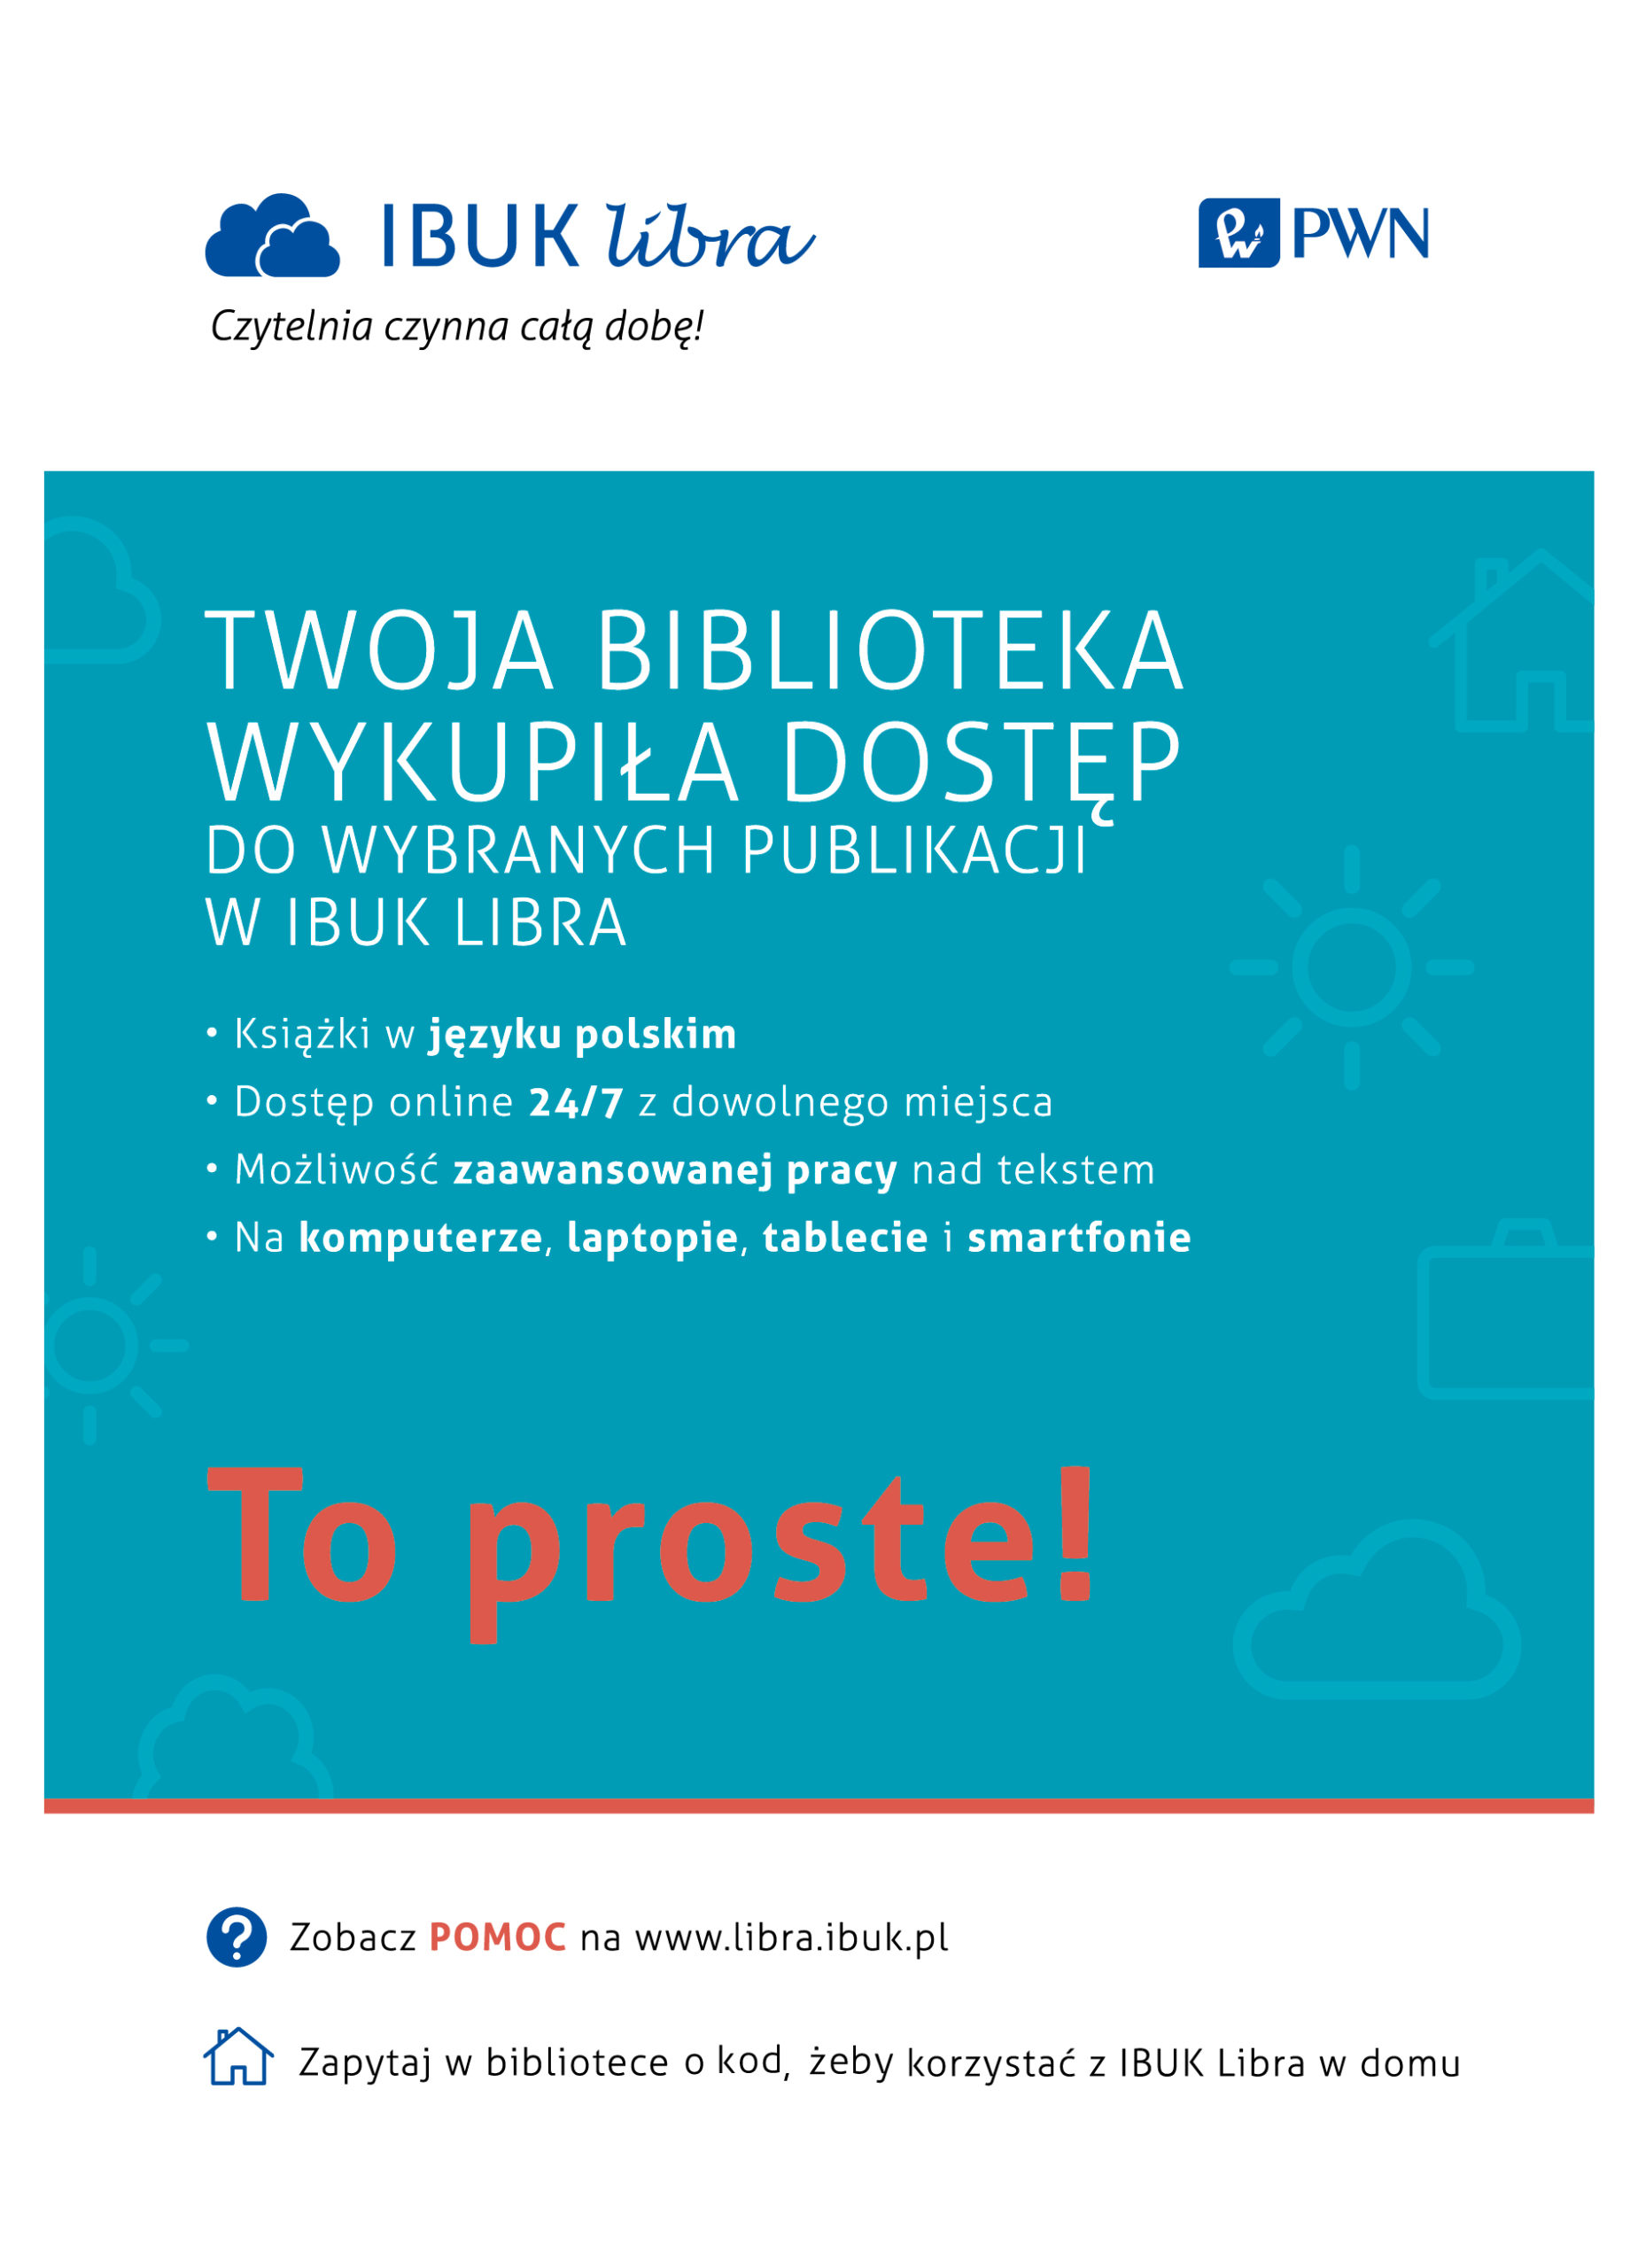 Plakat usługi dostępu do bazy ebooków IBUK LIBRA